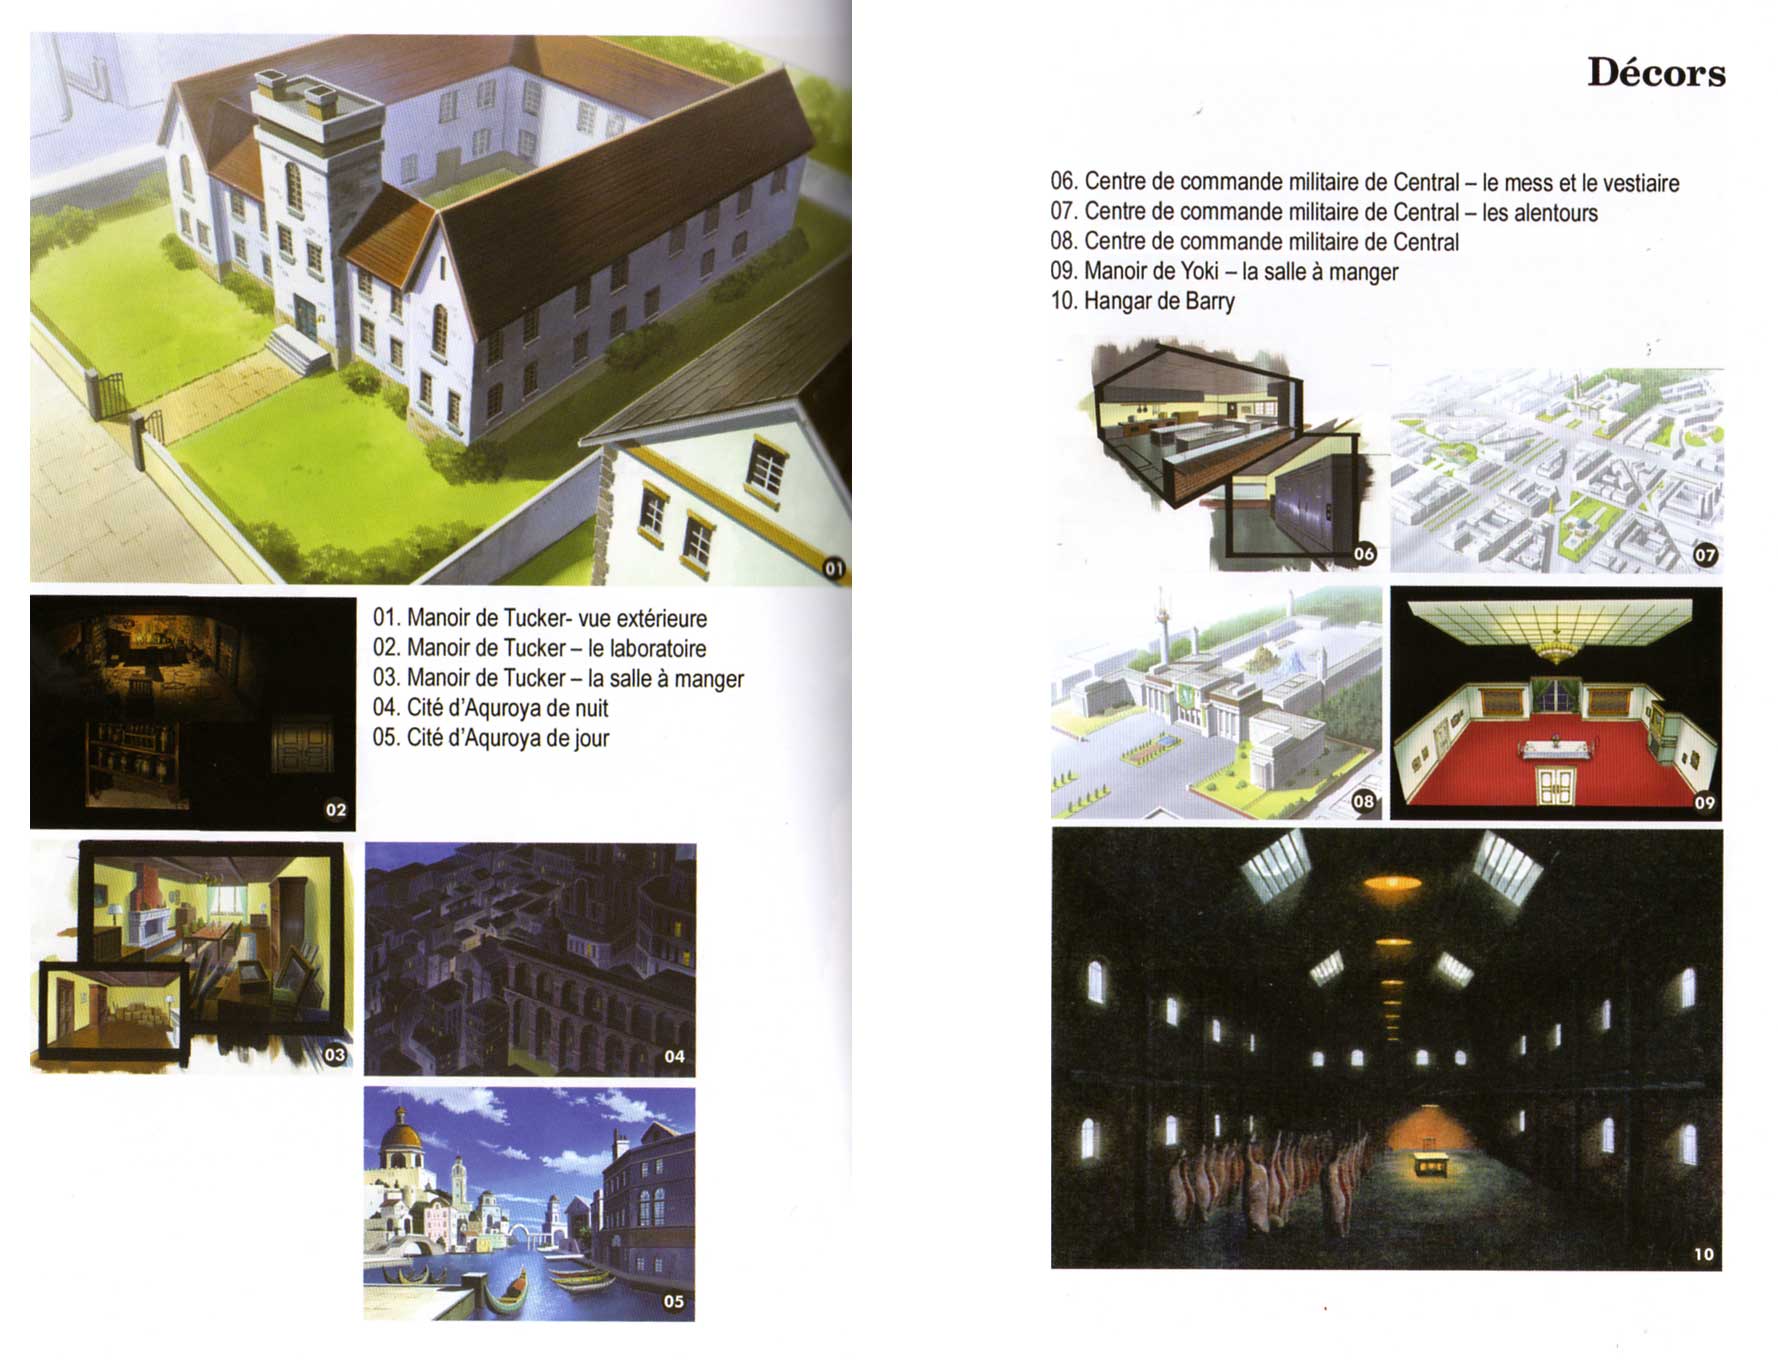 Décors extraits du livret d’information - Fullmetal Alchemist Box DVD collector 1 (Dybex - 2008)